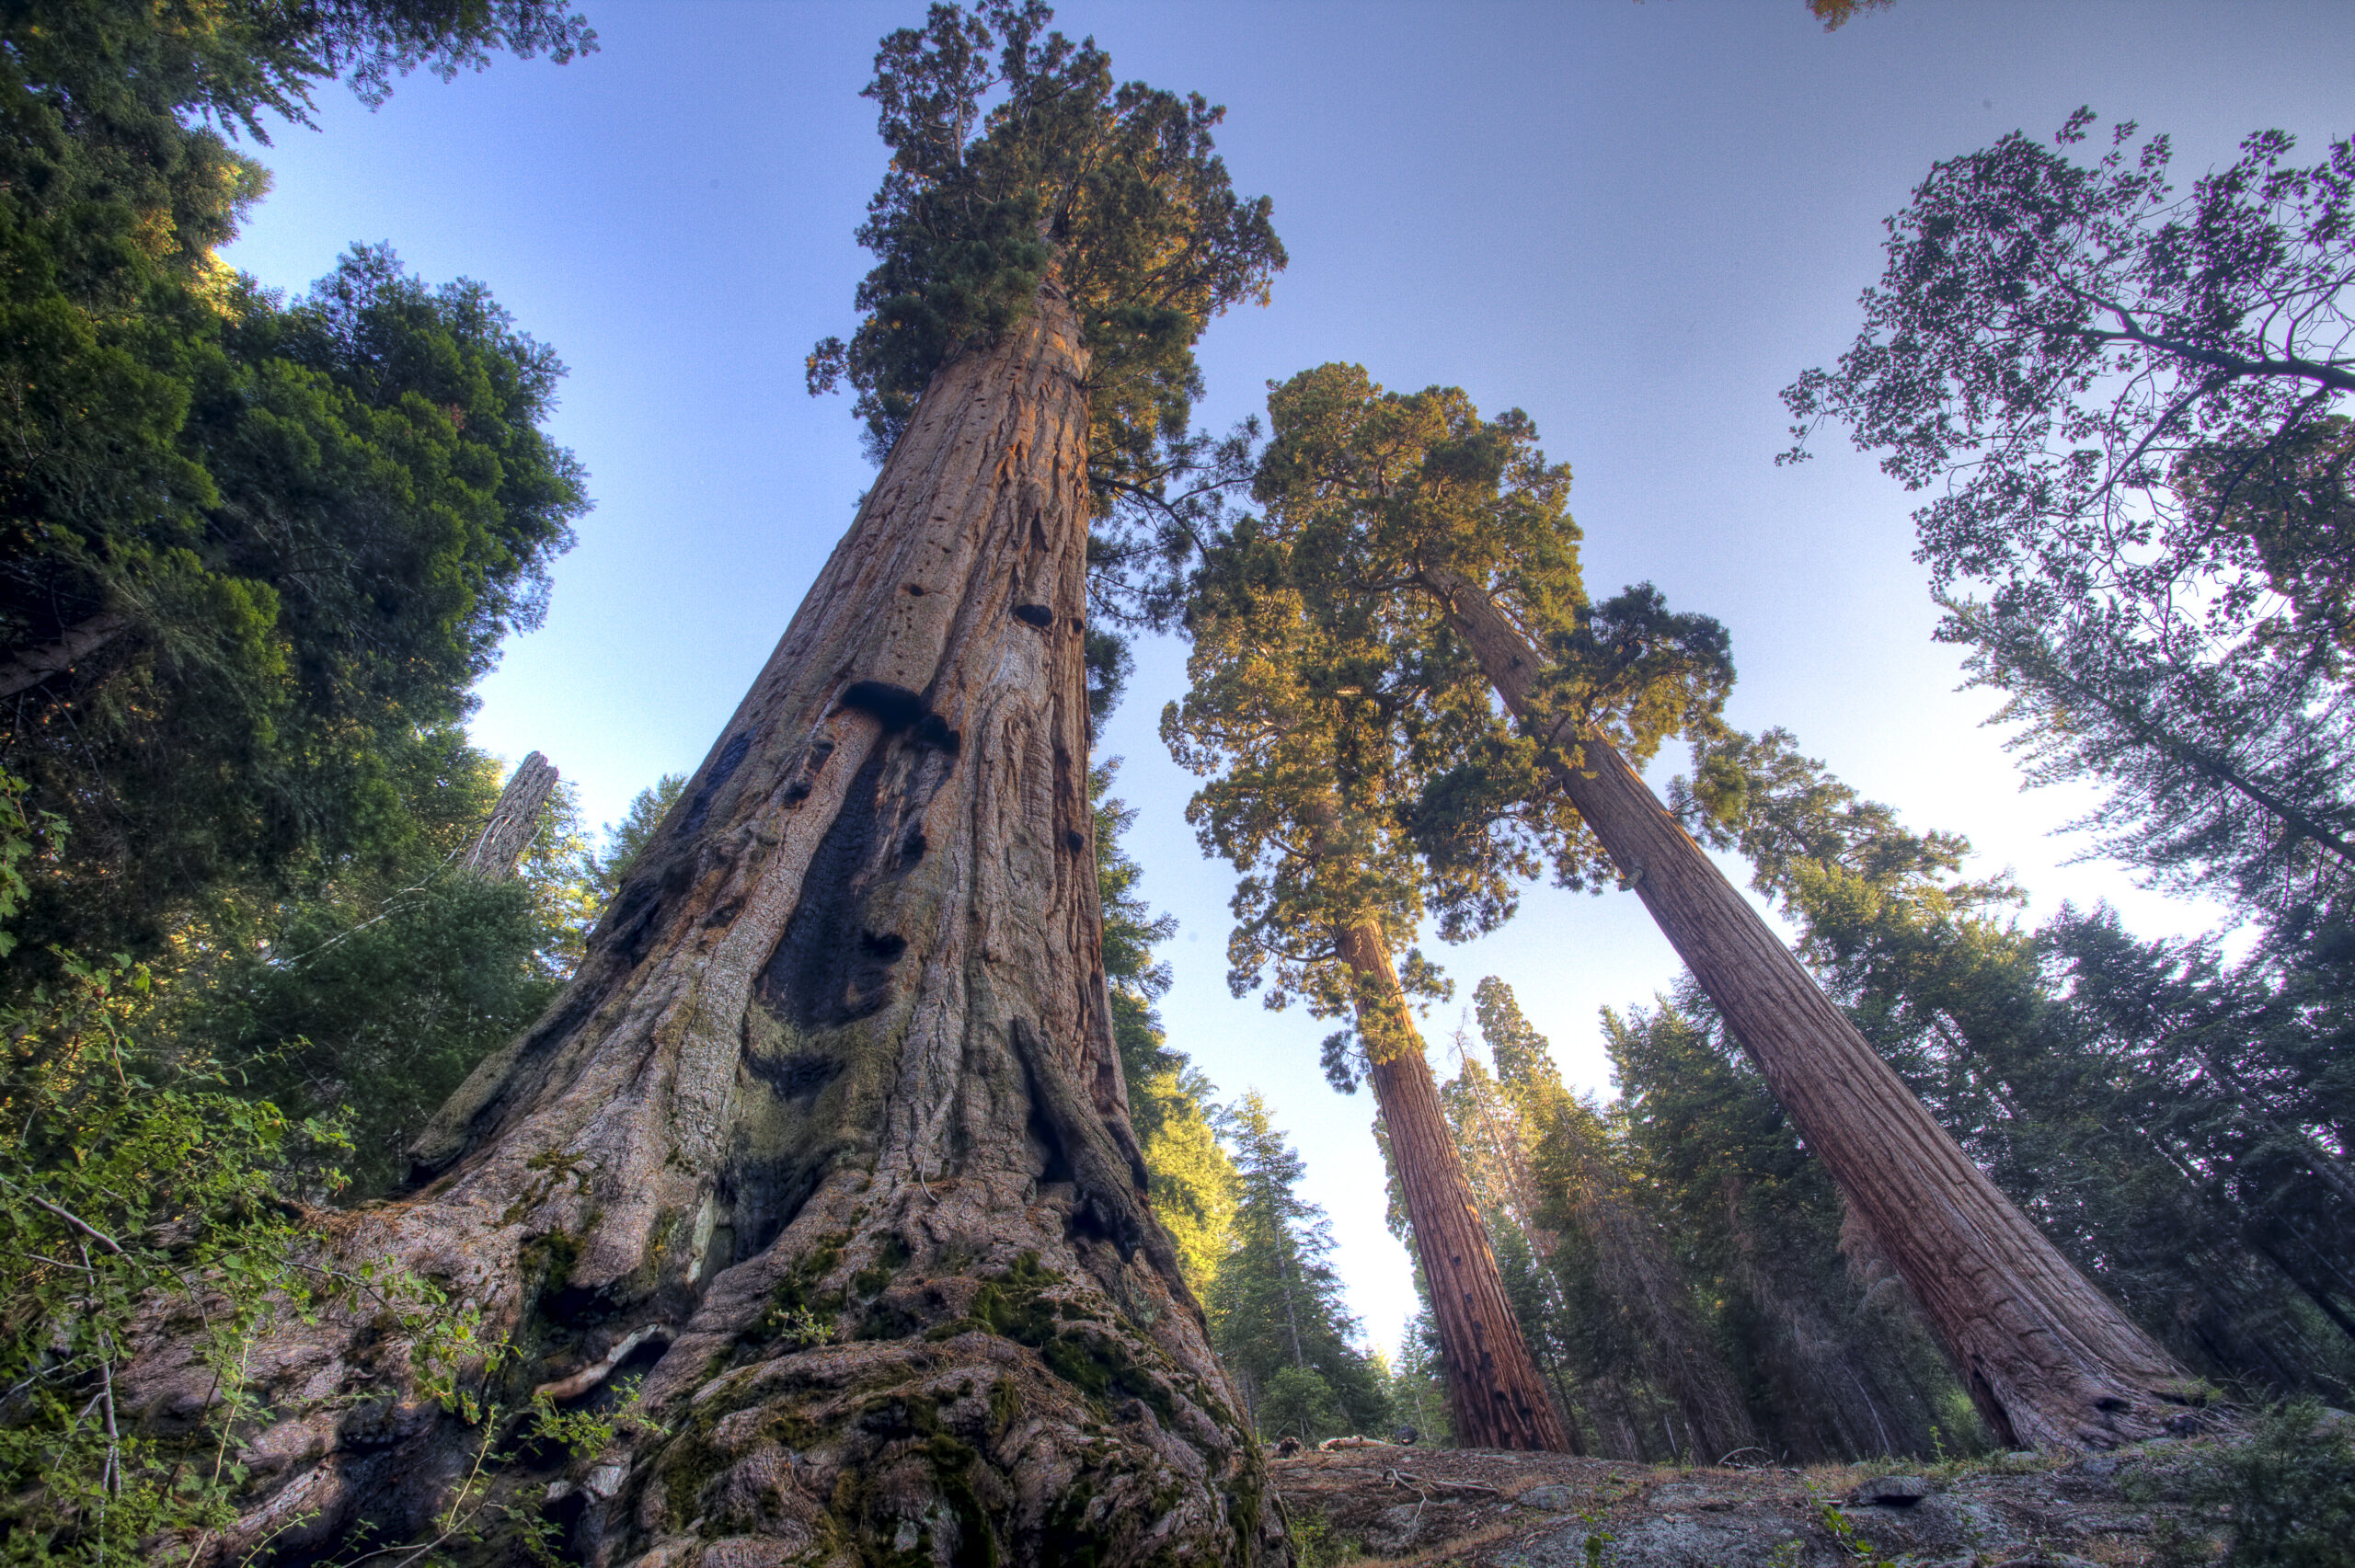 Площадь самого большого леса в мире. Калифорнийская Секвойя Гиперион. Секвойя дерево. Секвойя дерево гигант. Секвойя вечнозеленая дерево.